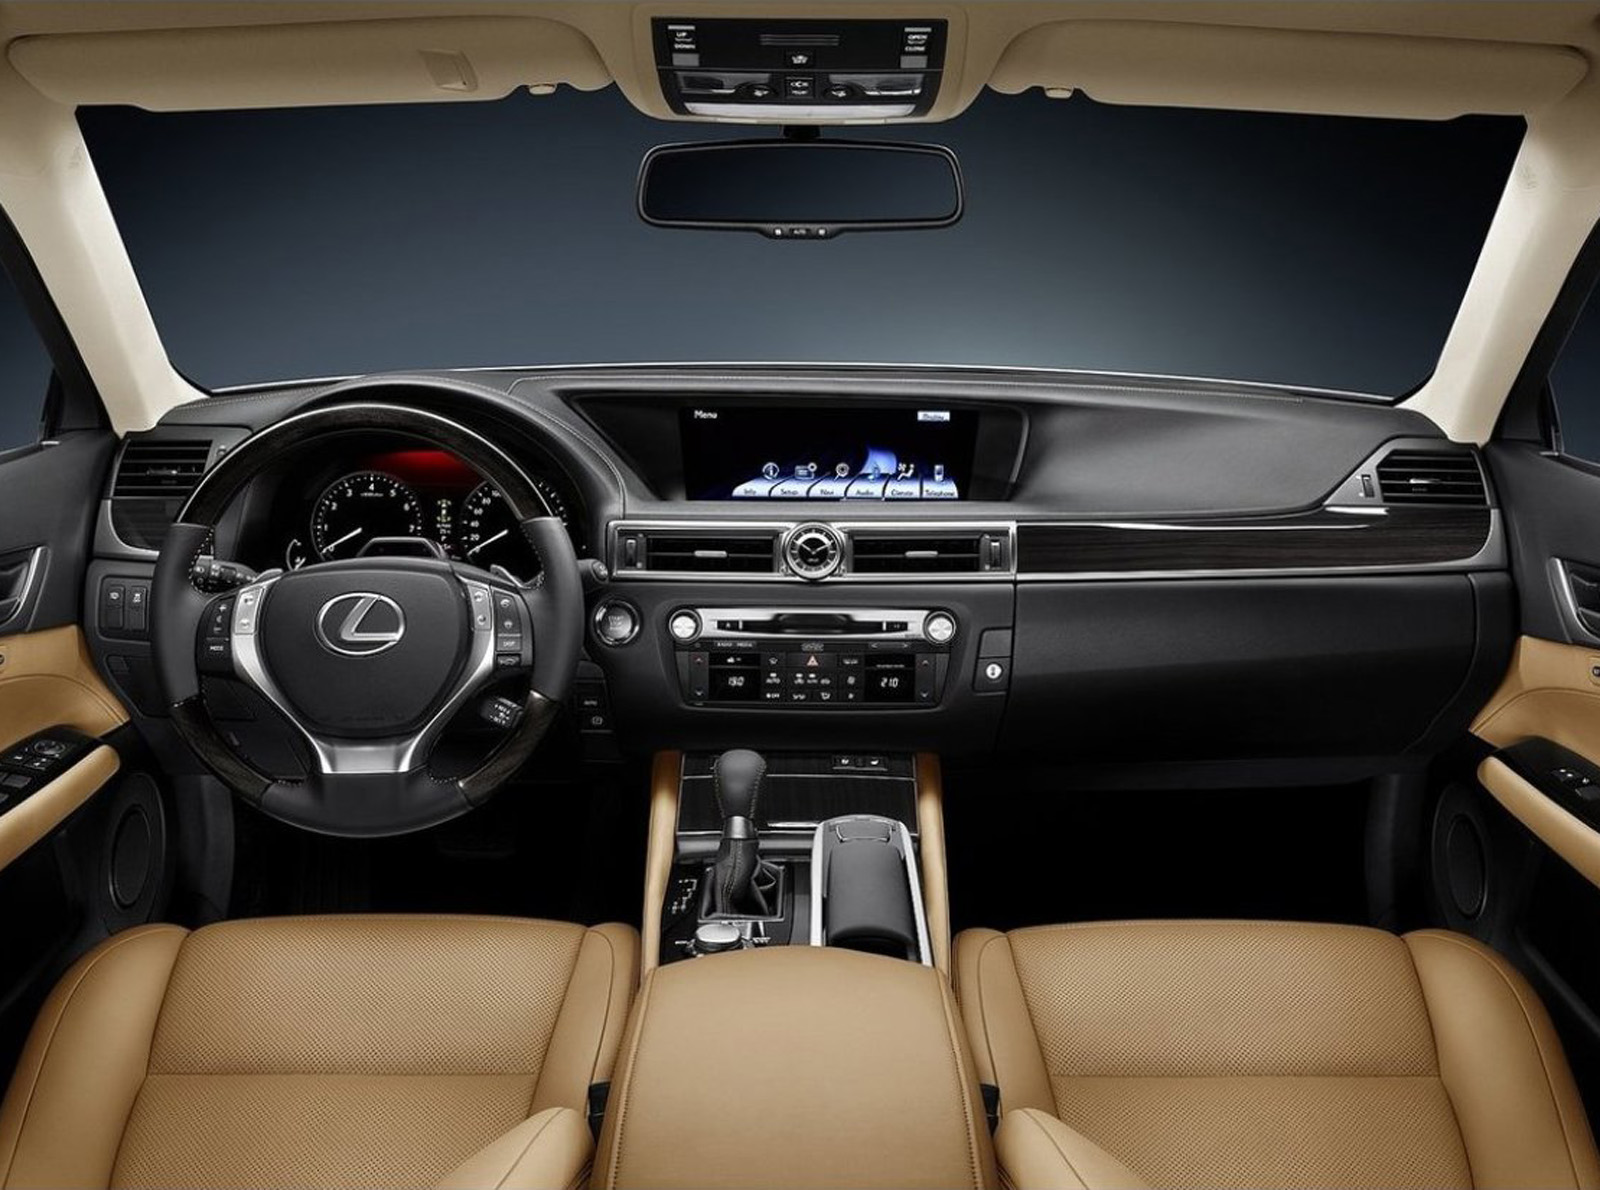 2013 Lexus GS 350 Interior (3).jpg